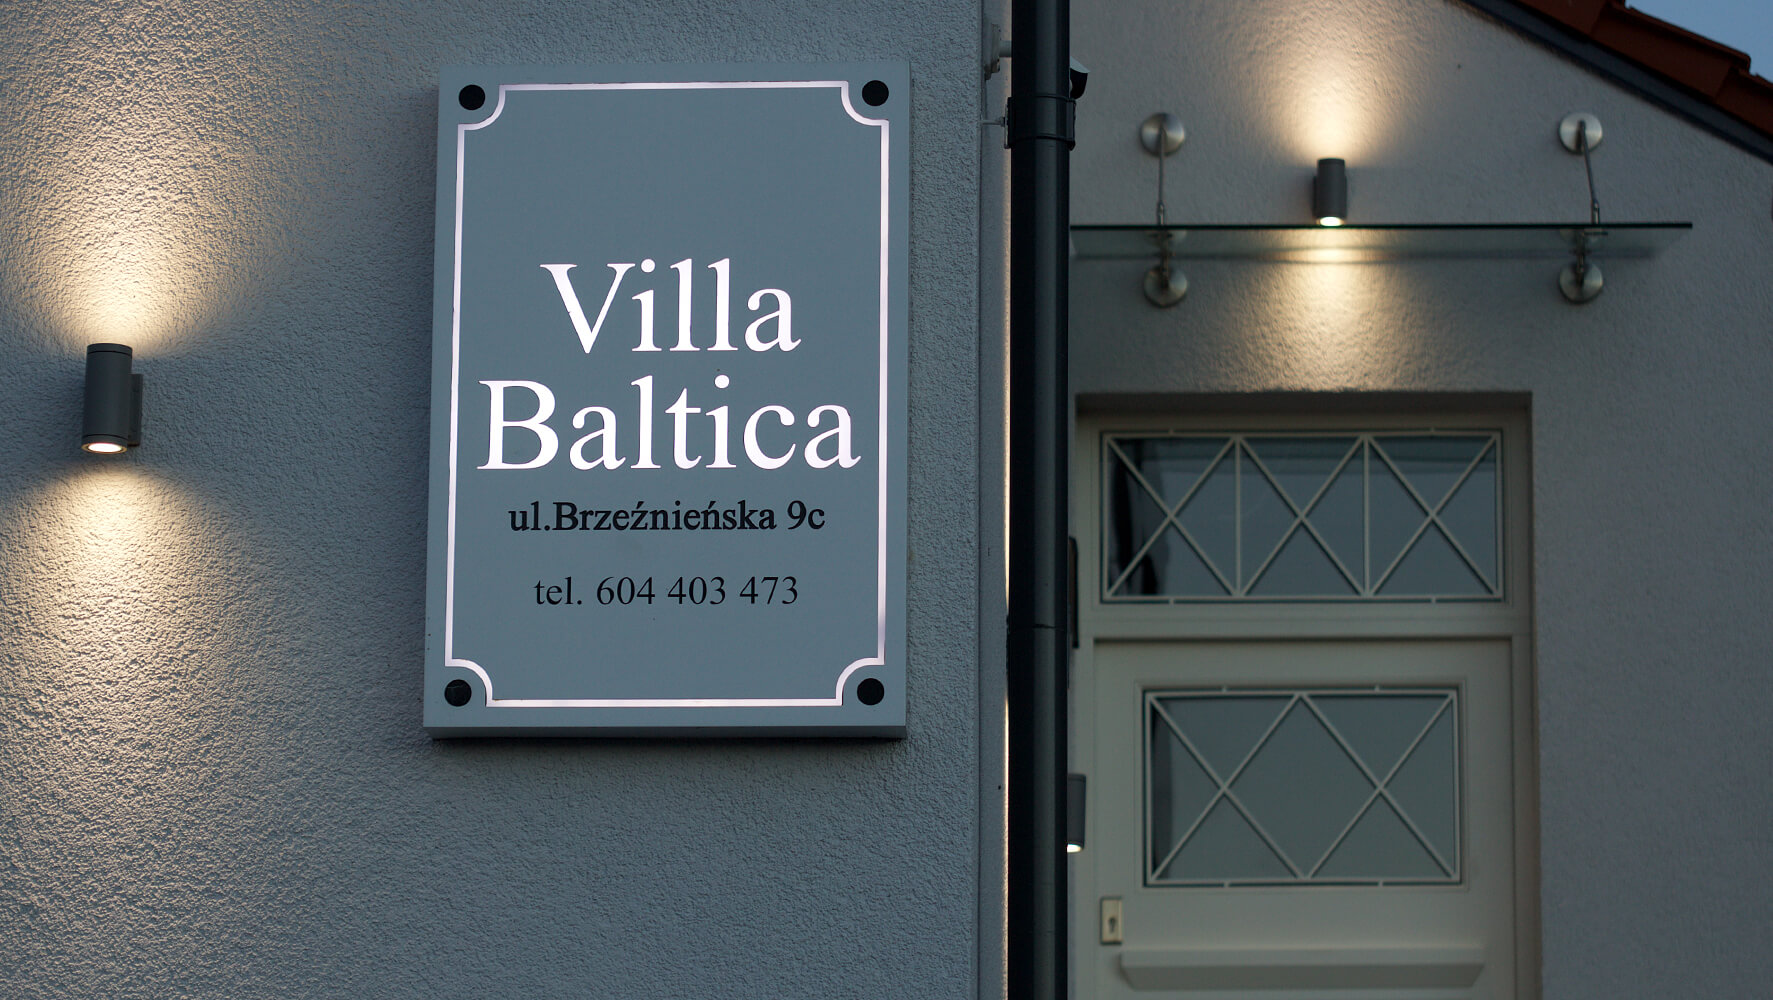 Villa Baltica - Villa Baltica - Firmenschild auf einem Dibondkoffer